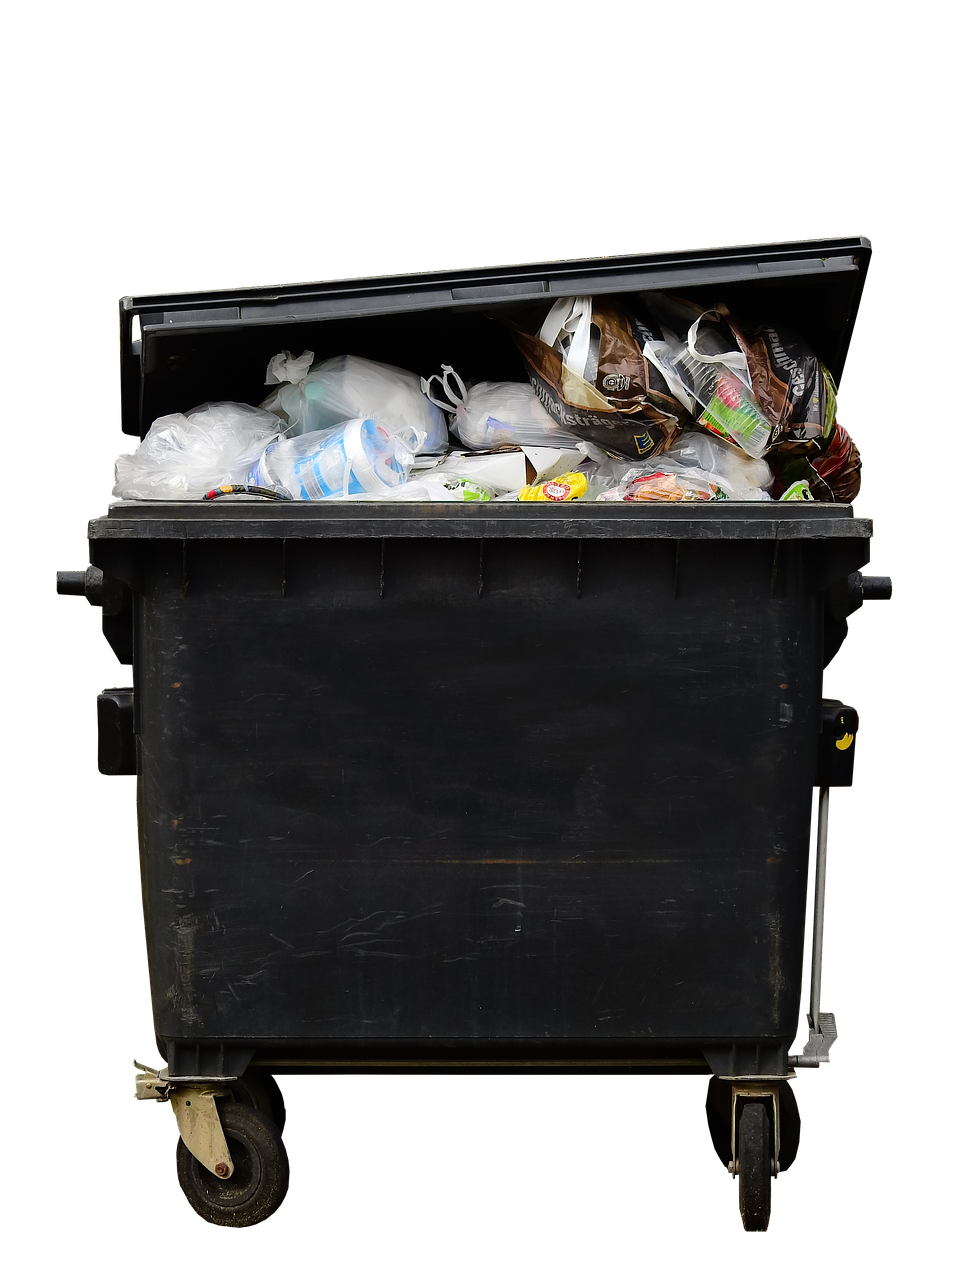 Jak zorganizować wywóz odpadów wielkogabarytowych?